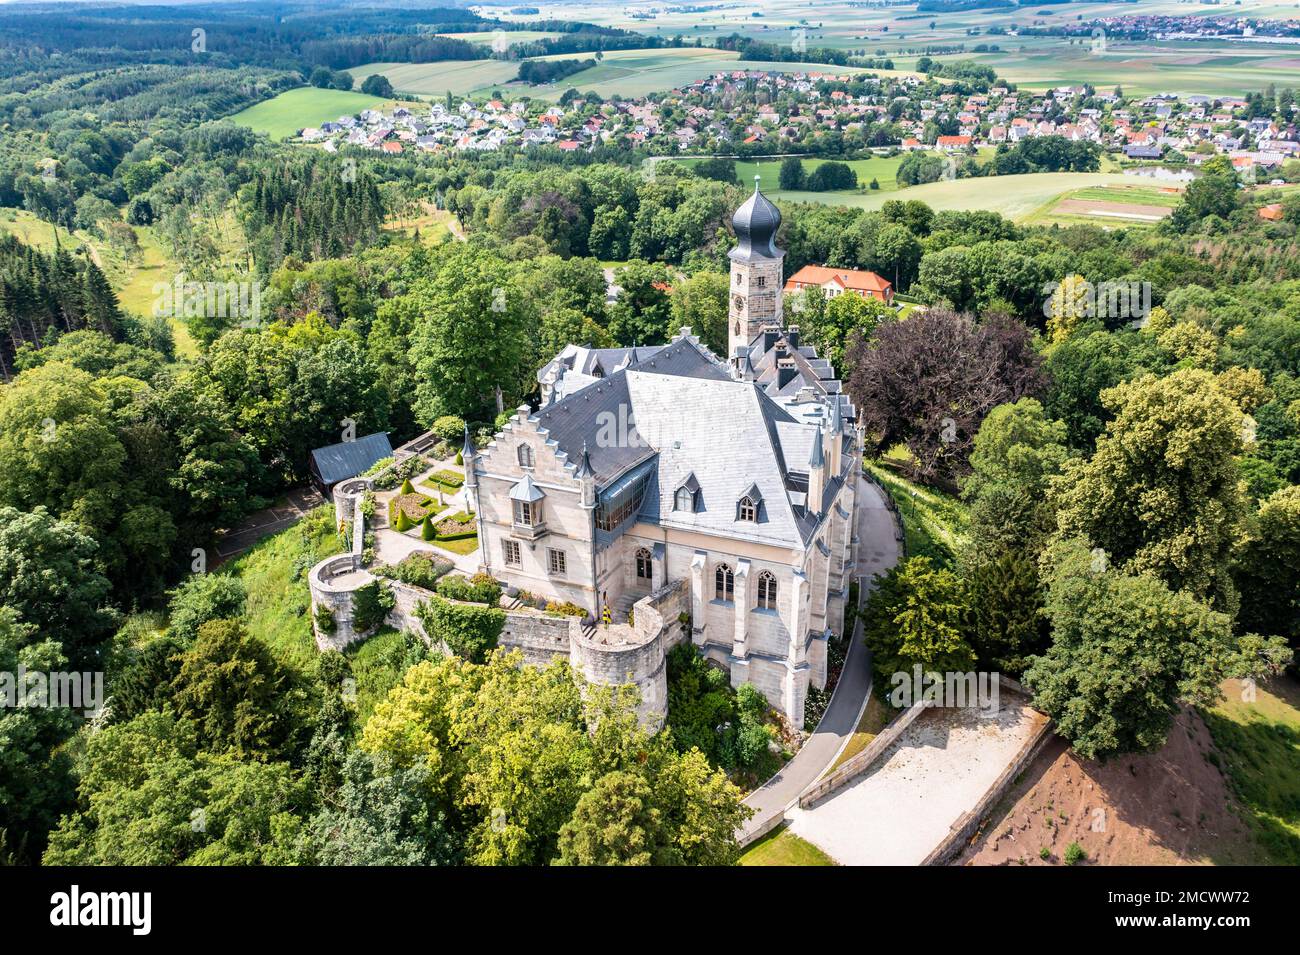 Veduta aerea, Castello di Callenberg, rifugio di caccia e palazzo estivo dei Duchi di Sassonia-Coburg e Gotha, Coburg, alta Franconia, Baviera, Germania Foto Stock